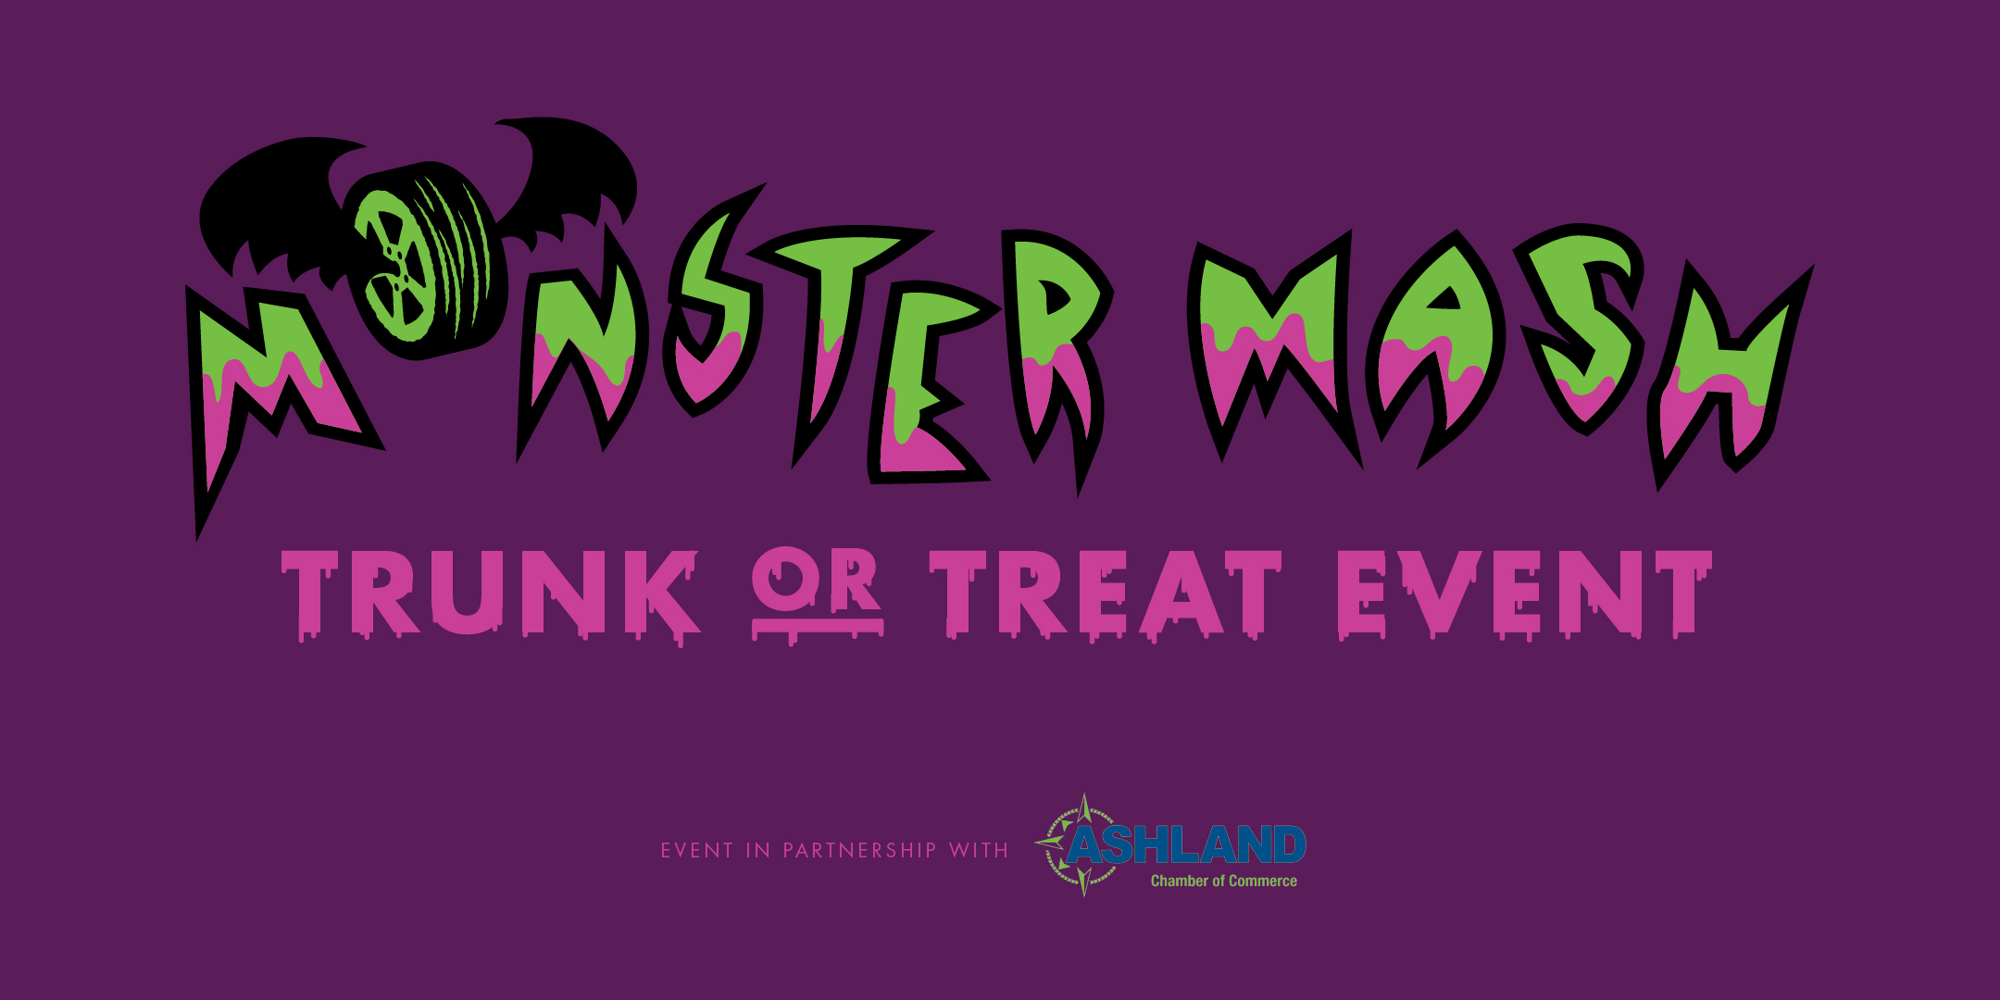 Monster Mash  promotional image